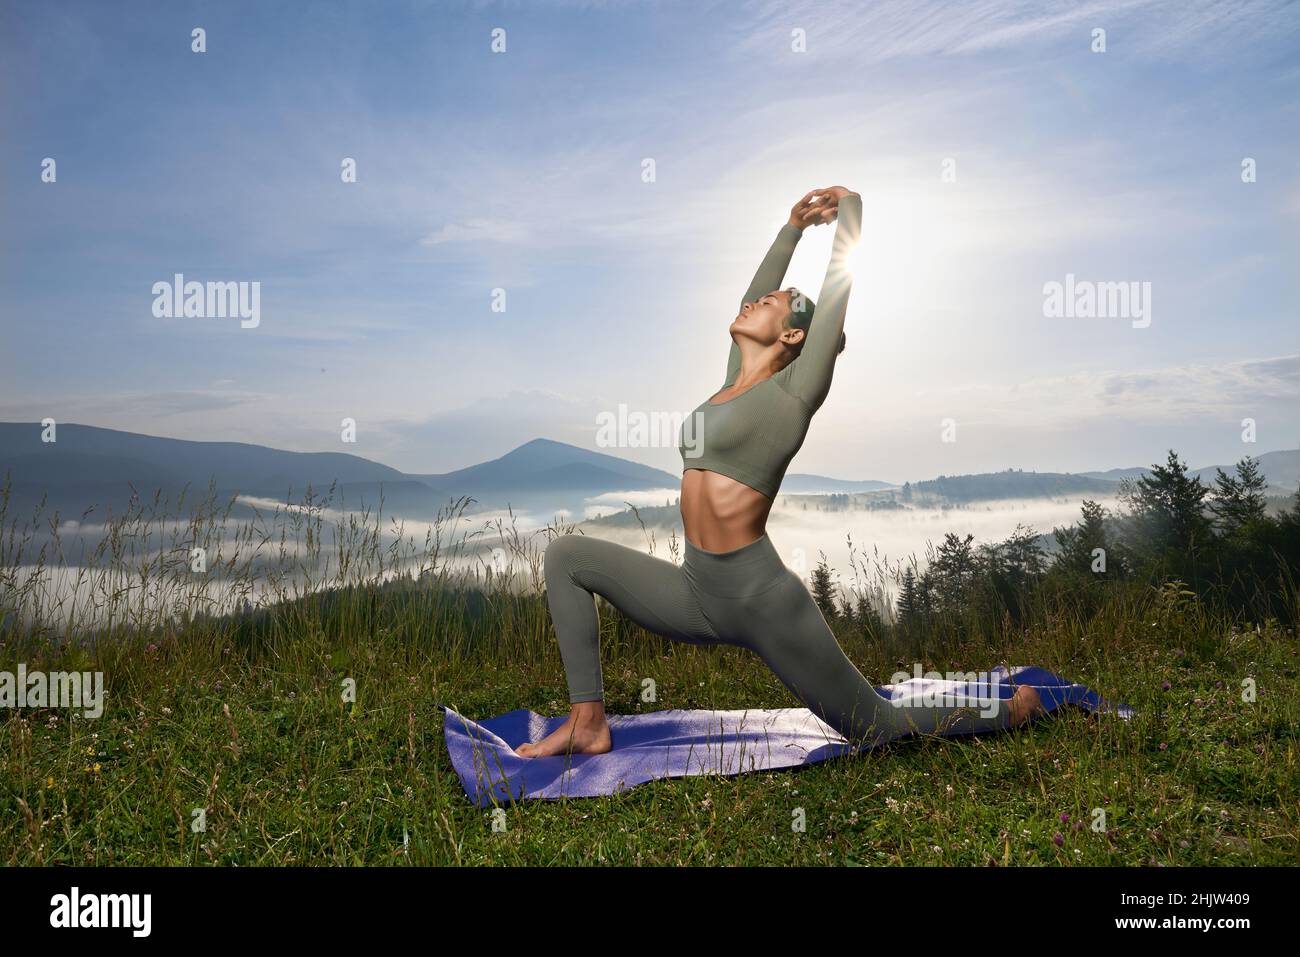 Gesund fit Frau mit schlankem Körper tun Yoga-Übungen zwischen grünen Sommer Berge. Hübsche Dame mit dunklem Haar, die morgens Zeit für ein aktives Training verbringt. Stockfoto